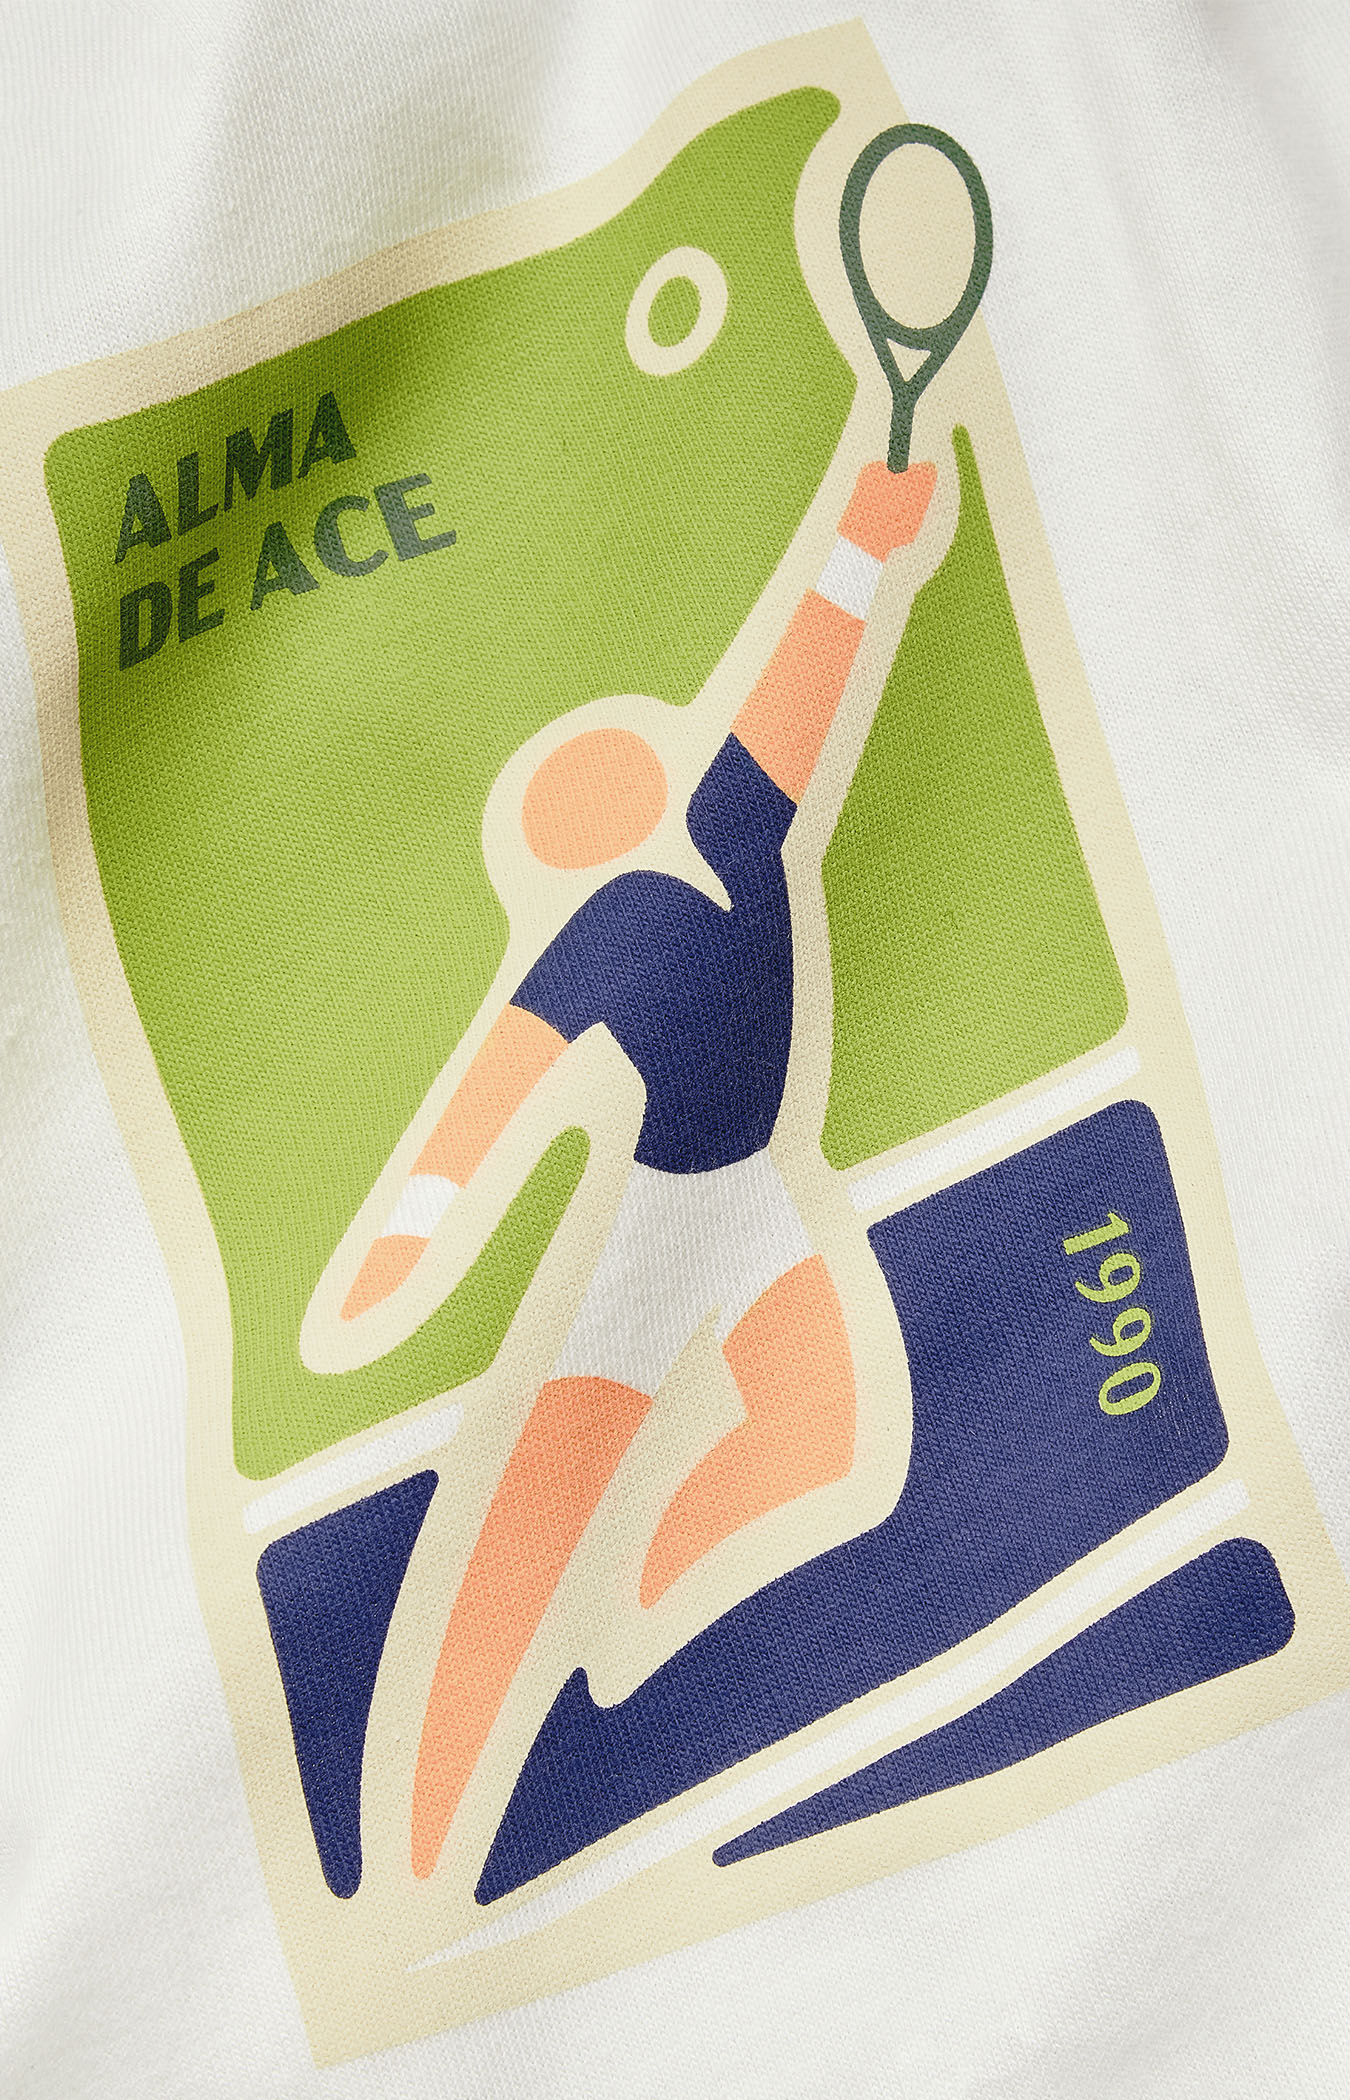 1990 Tennis ADA T-shirt